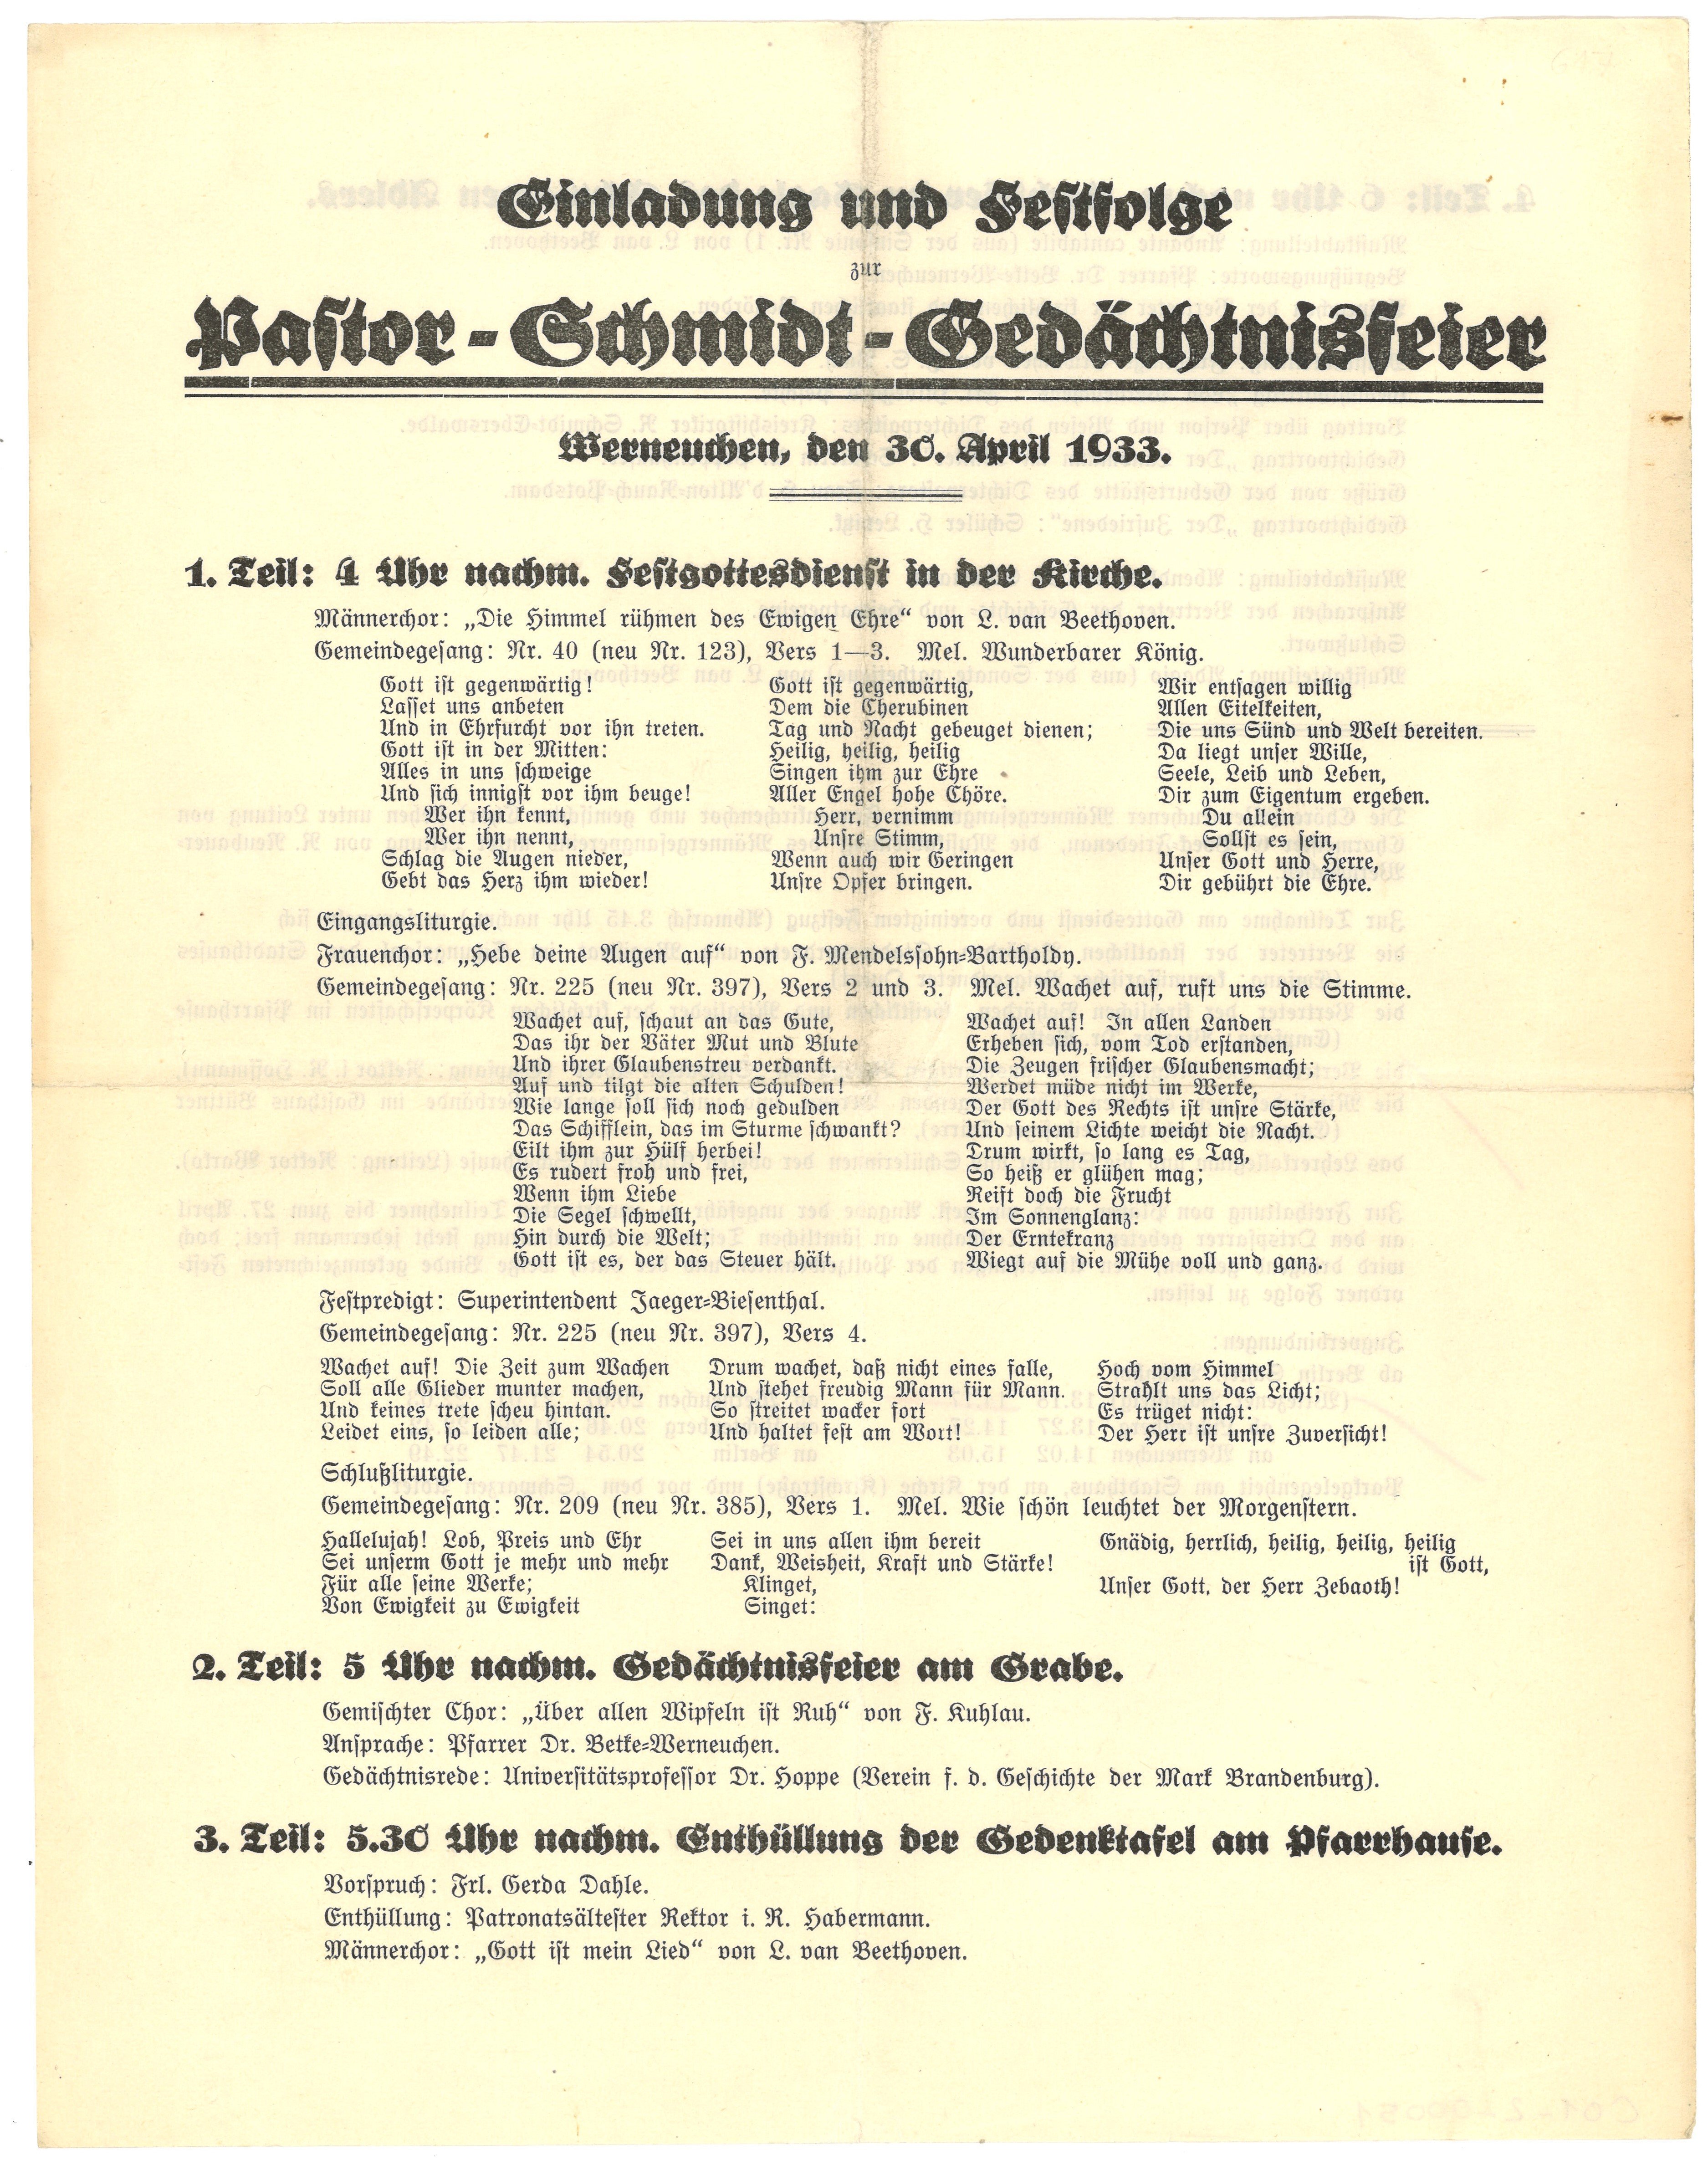 Einladung und Programm zur Pastor-Schmidt-Gedächtnisfeier in Werneuchen 1933 (Landesgeschichtliche Vereinigung für die Mark Brandenburg e.V., Archiv CC BY)